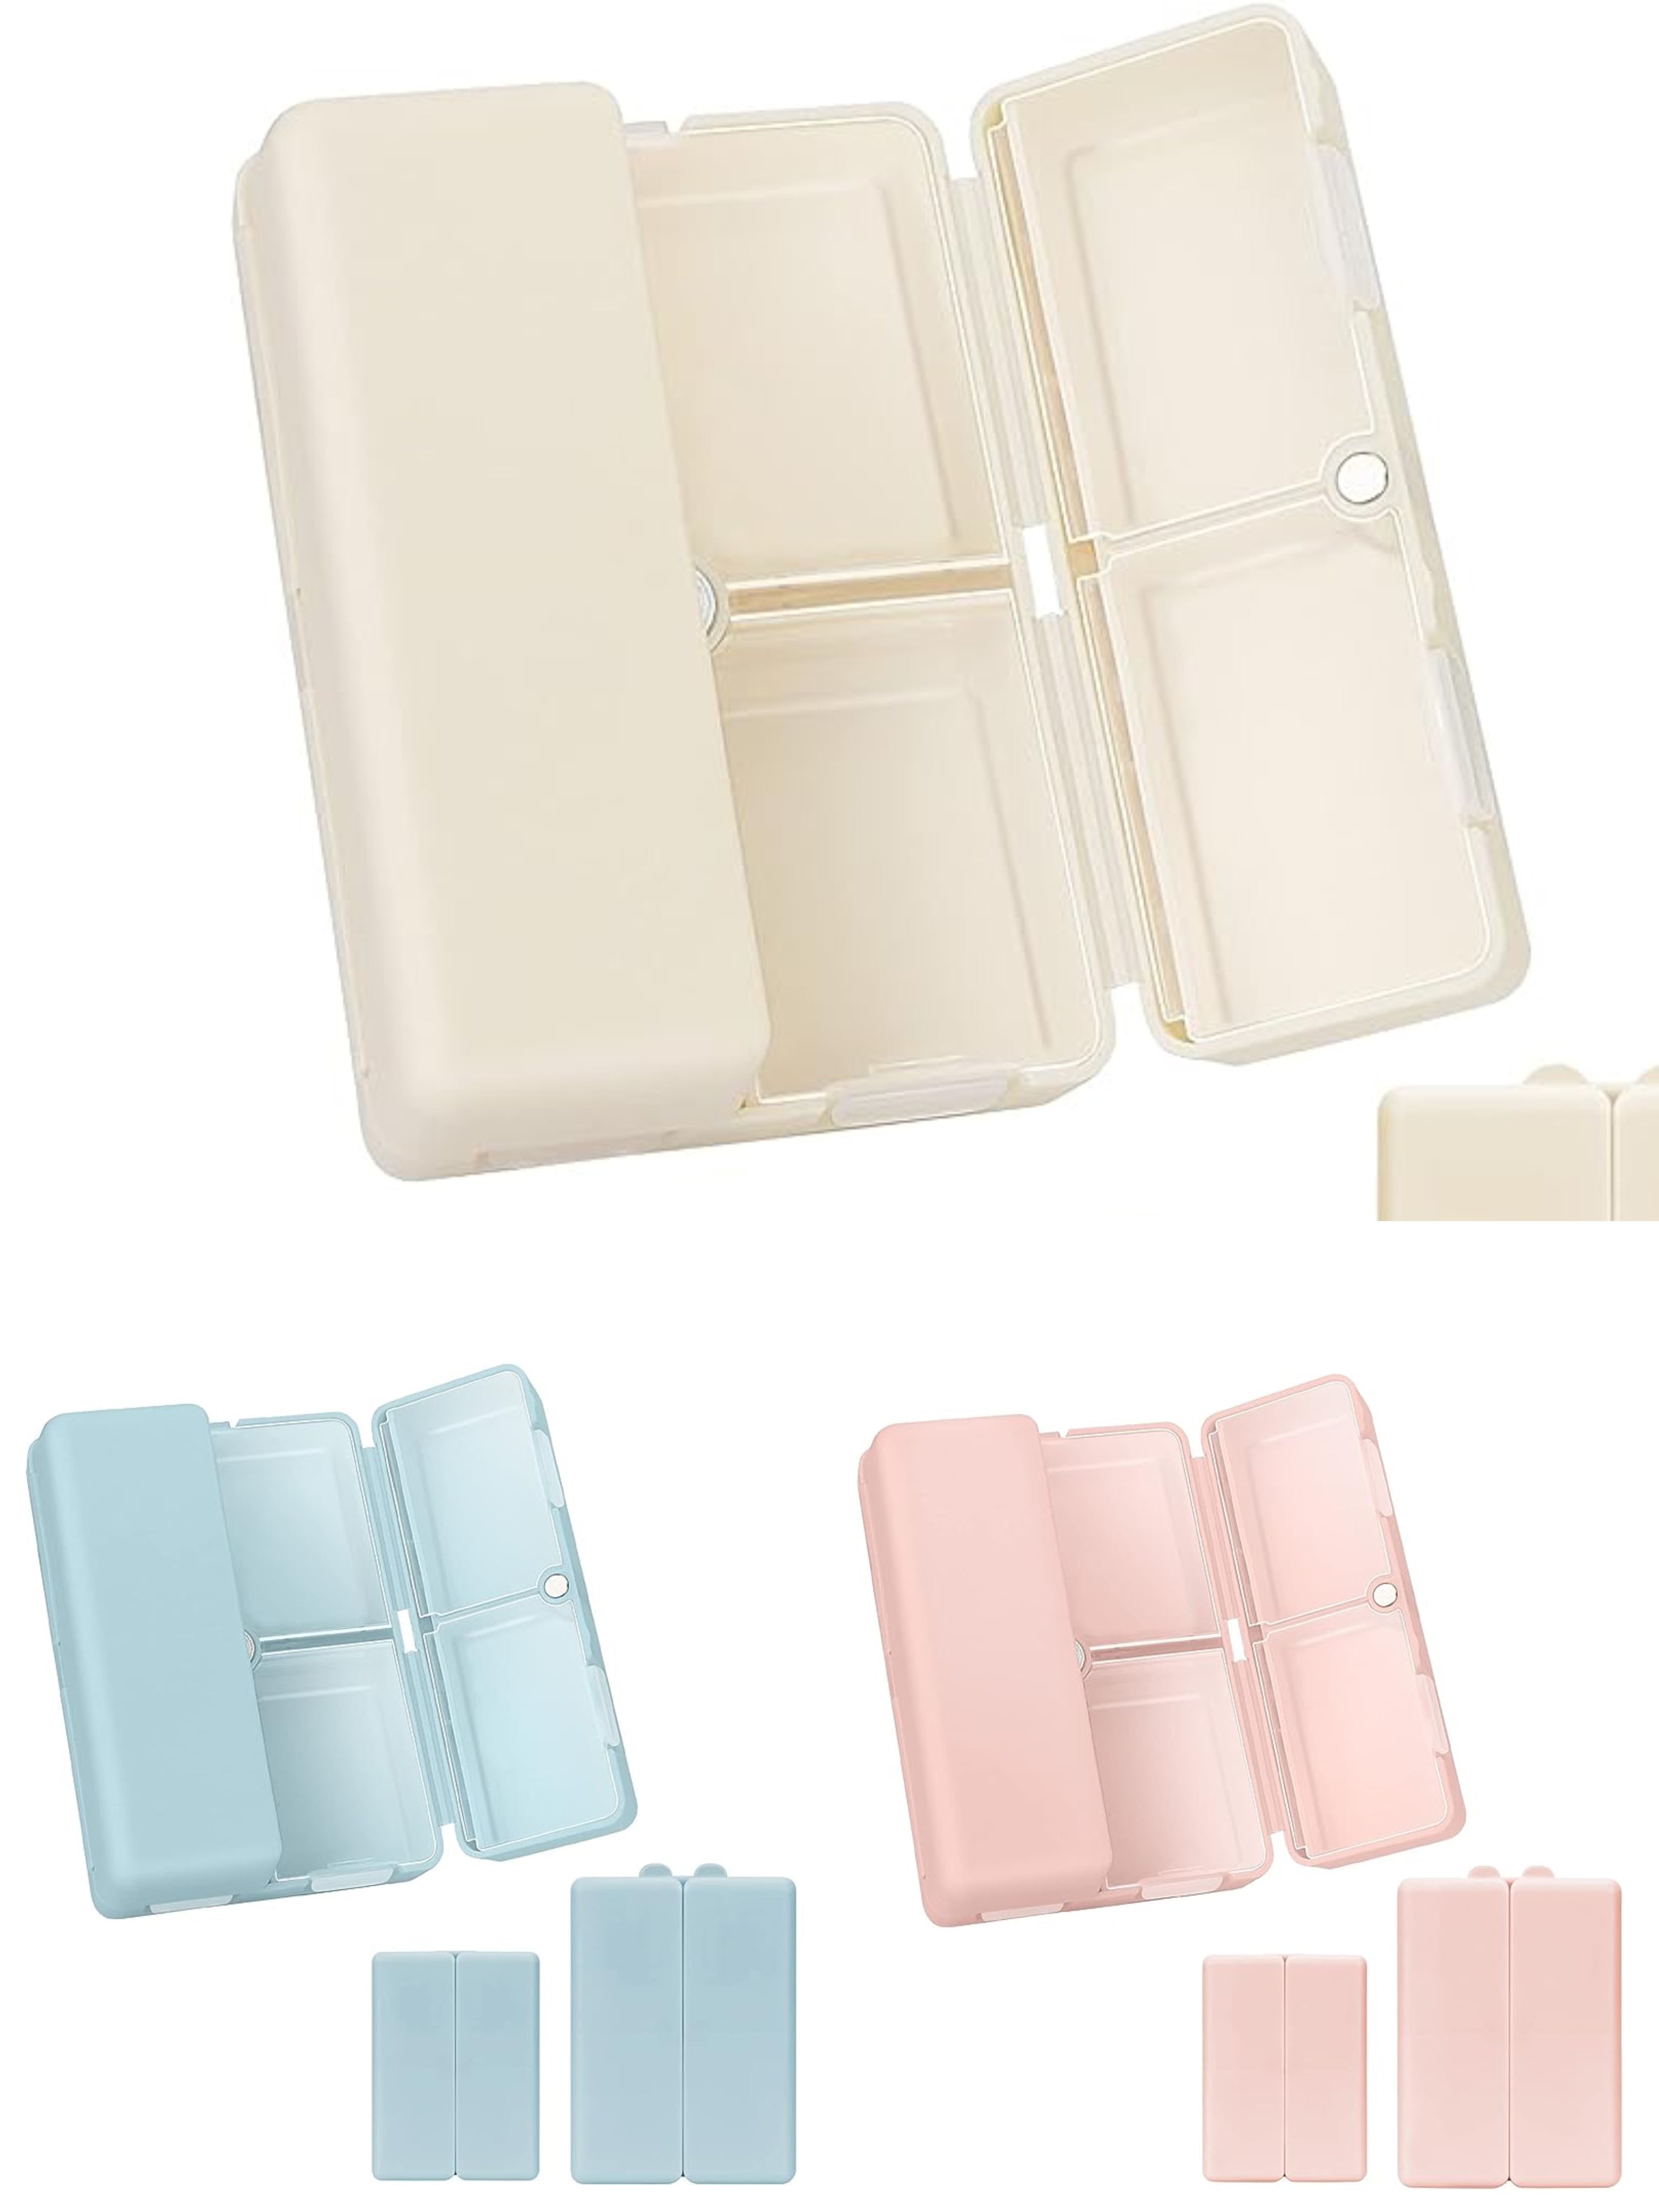 便携式磁吸药盒 附标注贴纸  米色，粉色，蓝色各1个 共3个